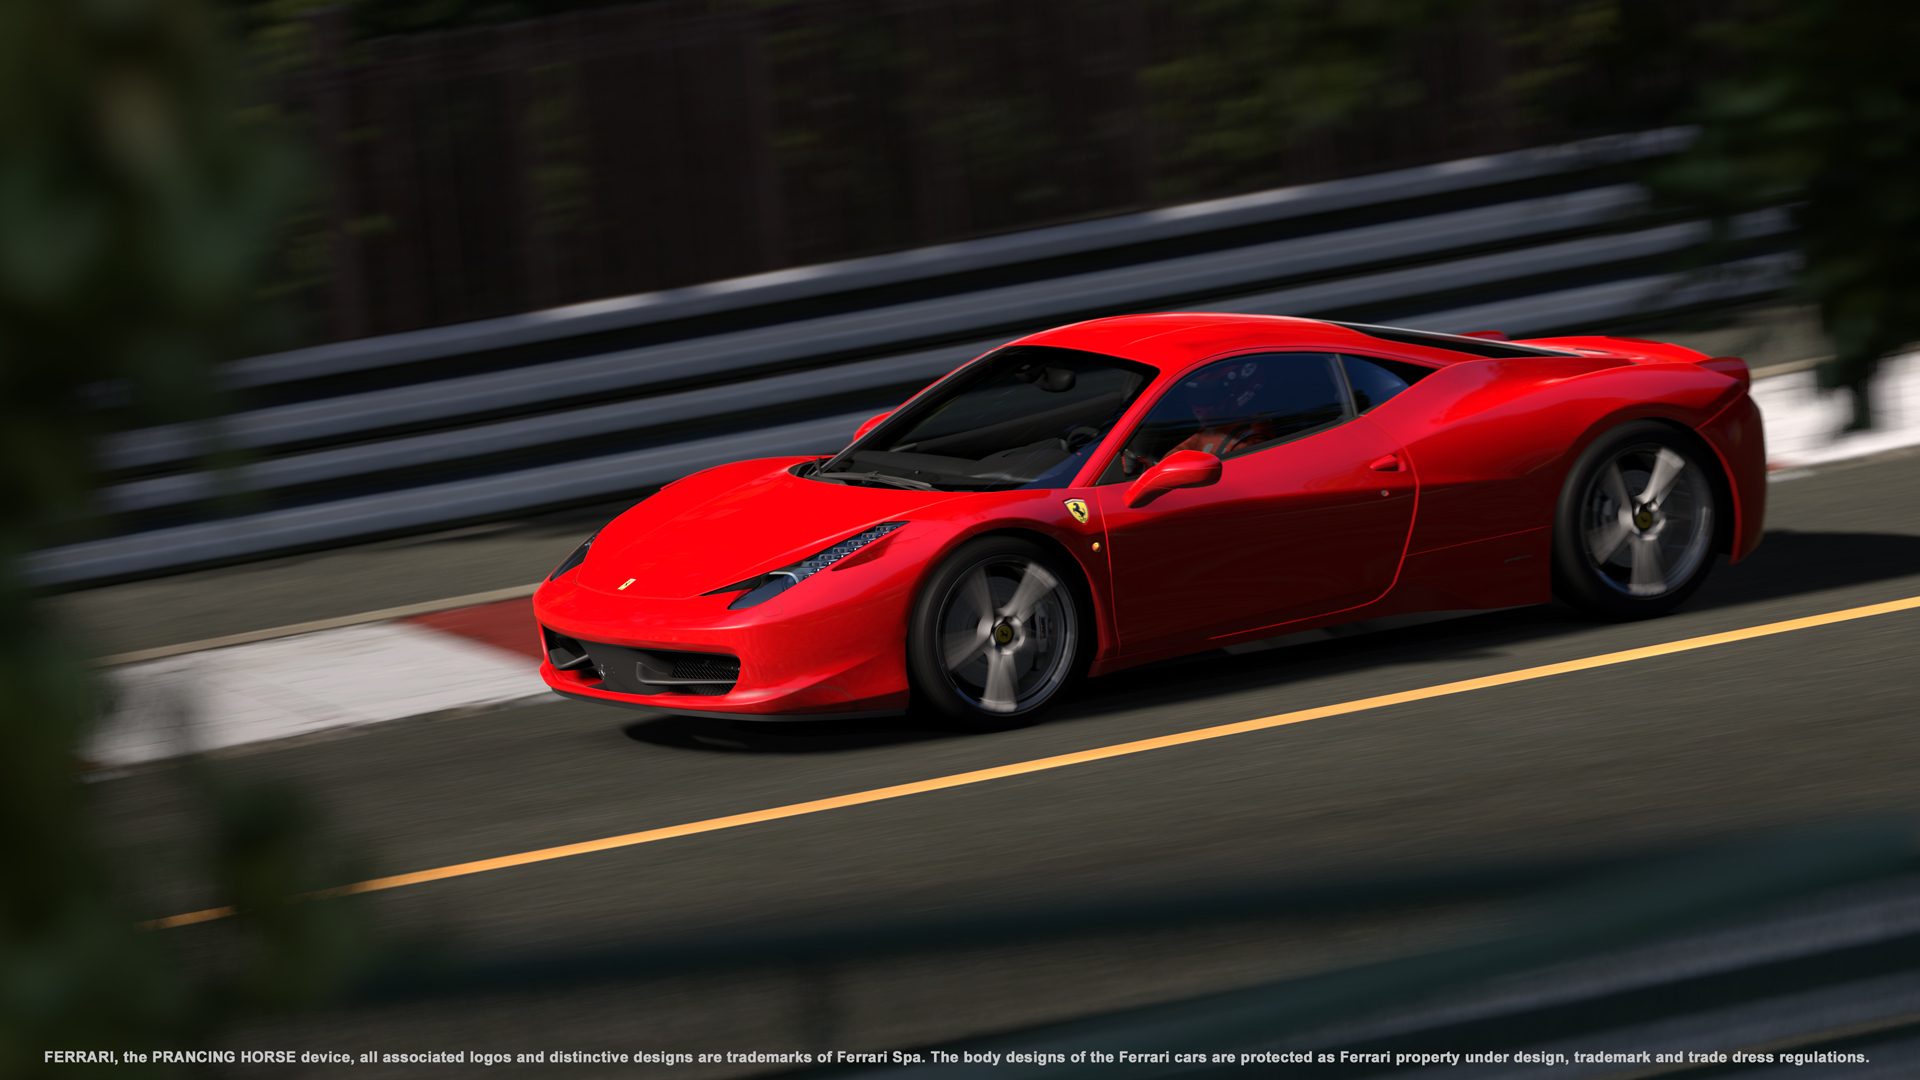 автомобили, Феррари, транспортные средства, Ferrari 458 Italia - обои на рабочий стол